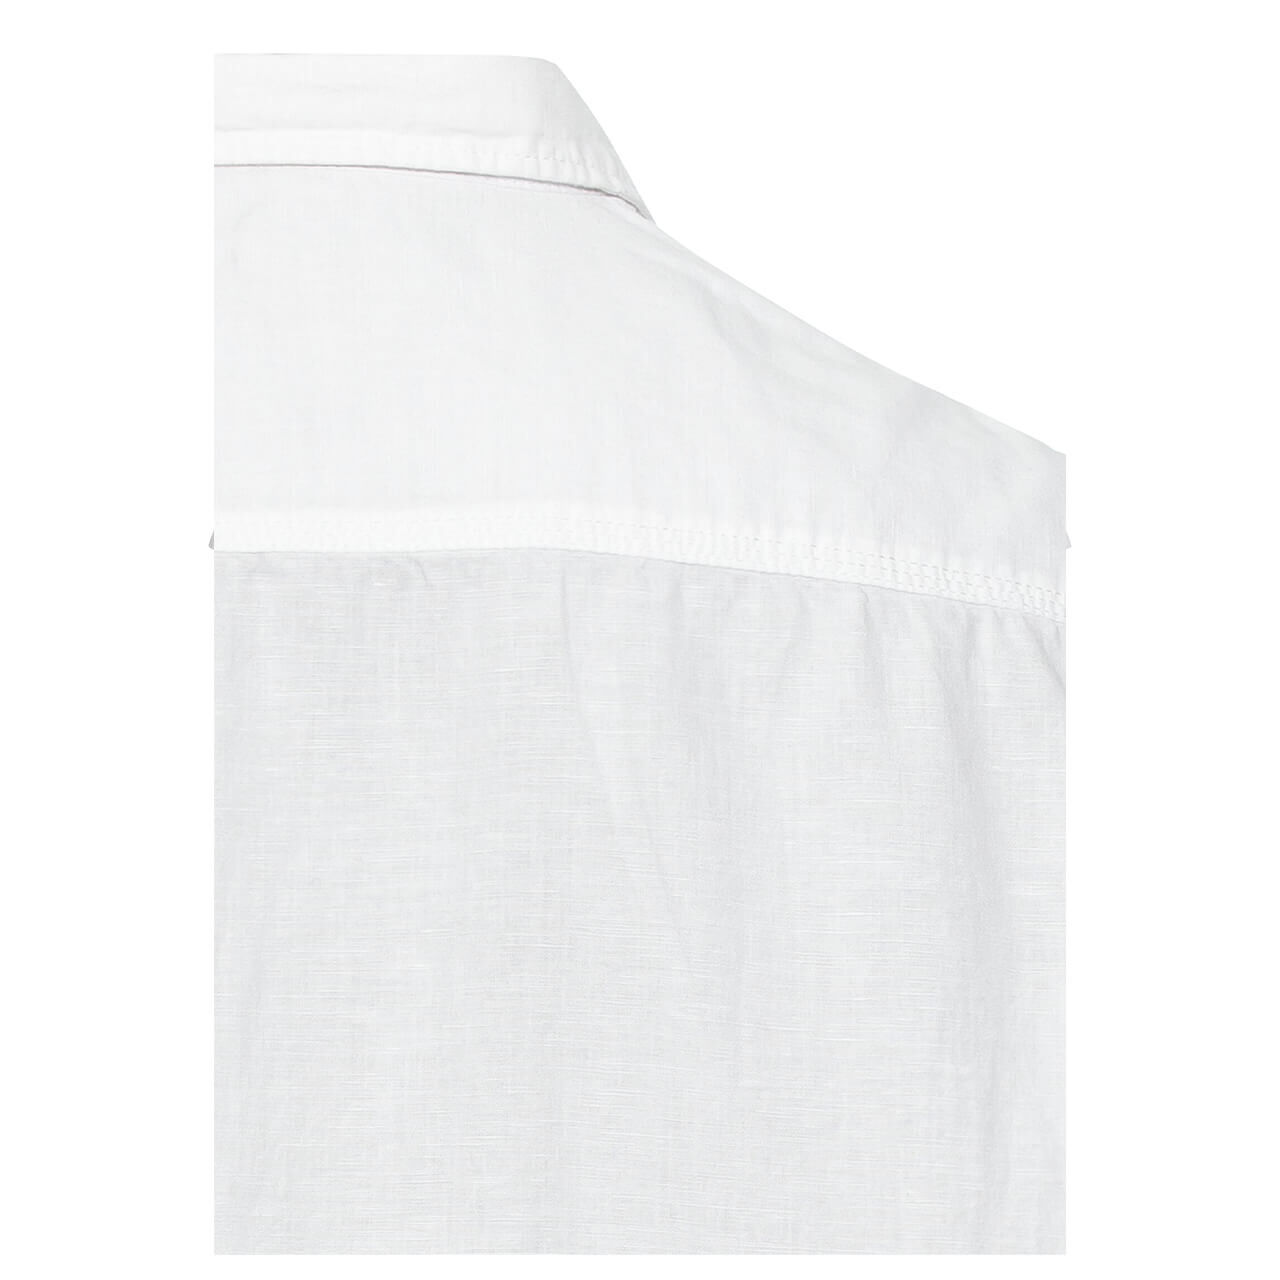 Camel active Herren 1/2 Arm Hemd white linen blend